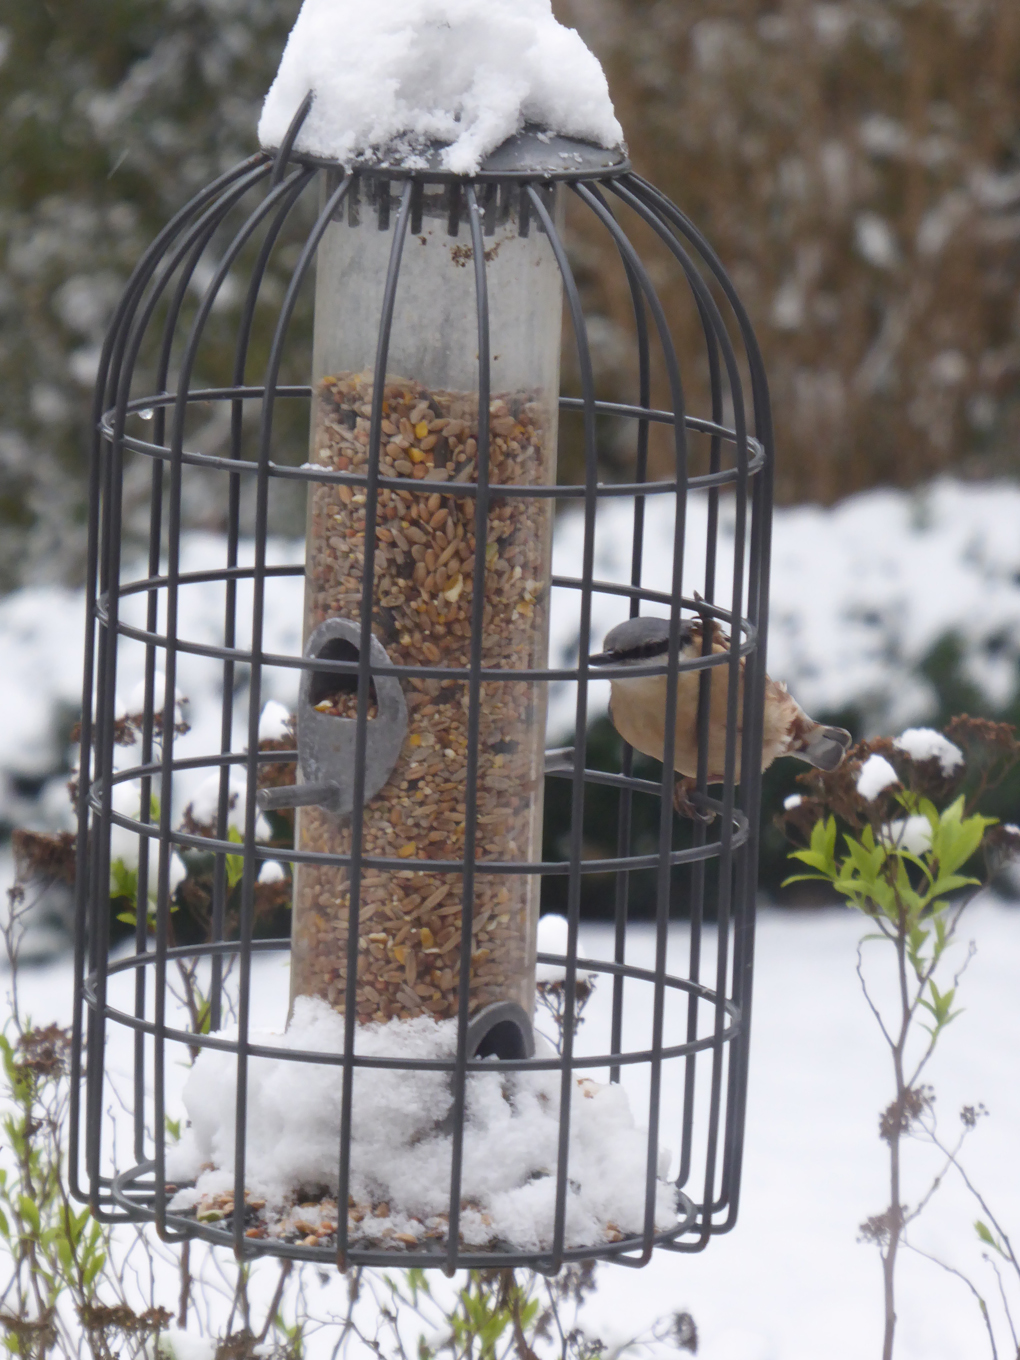 Nuthatch feeding at the bird feeder